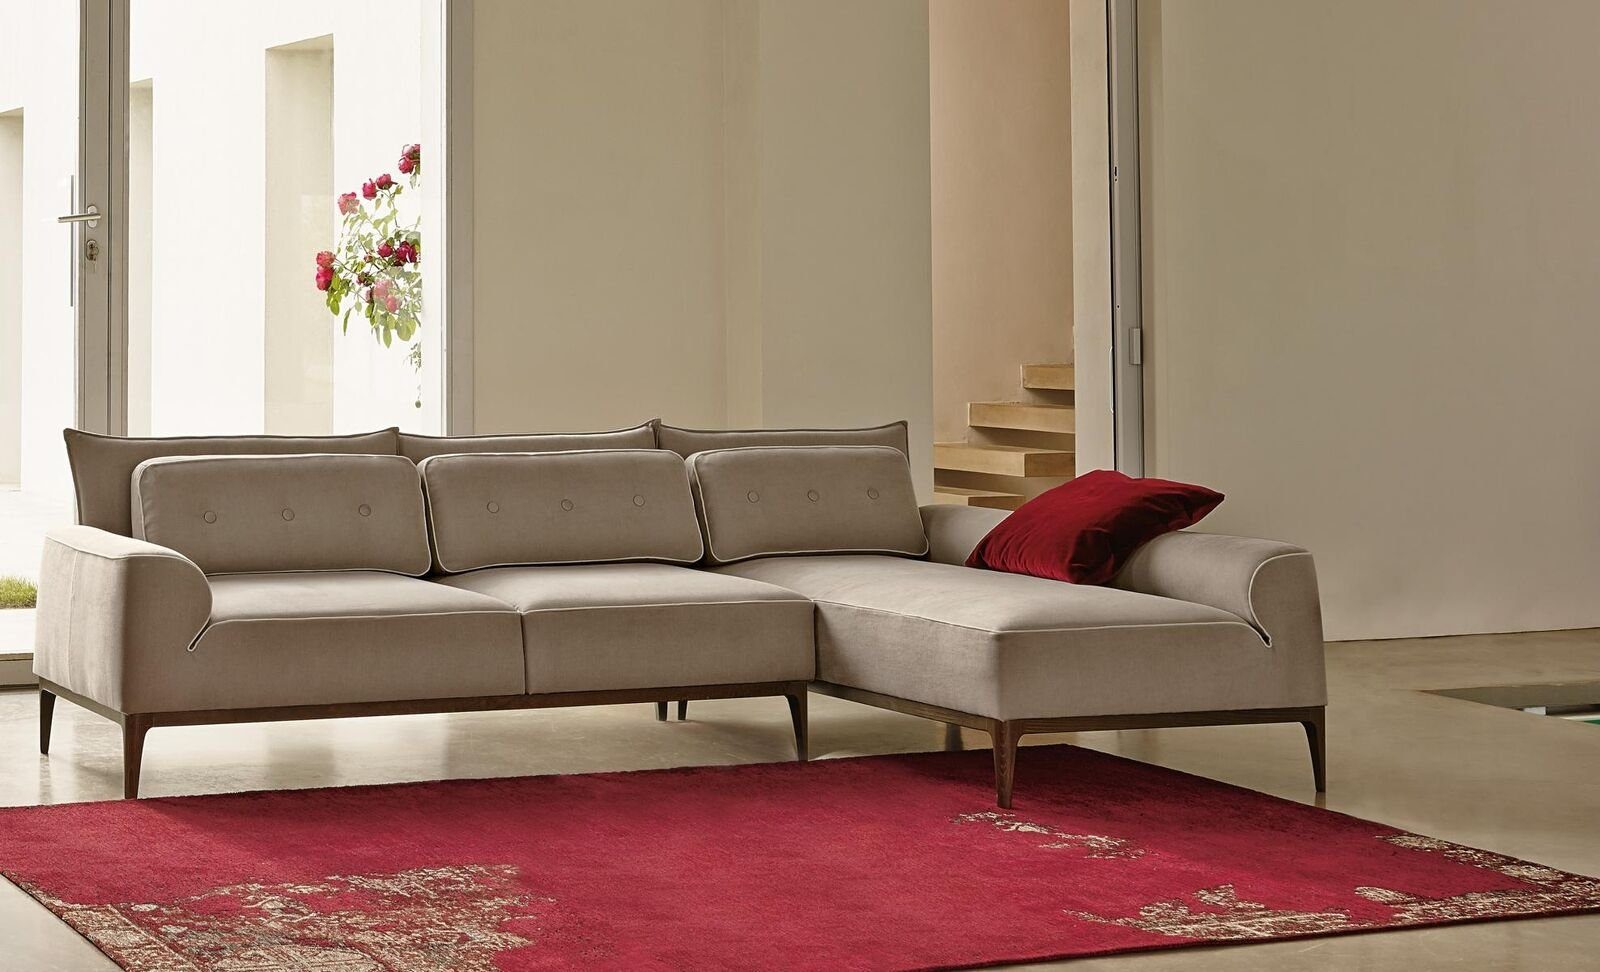 JVmoebel Ecksofa Ecksofa L Form Möbel Möbel Luxus Grau Couch Sofa Design Wohnzimmer